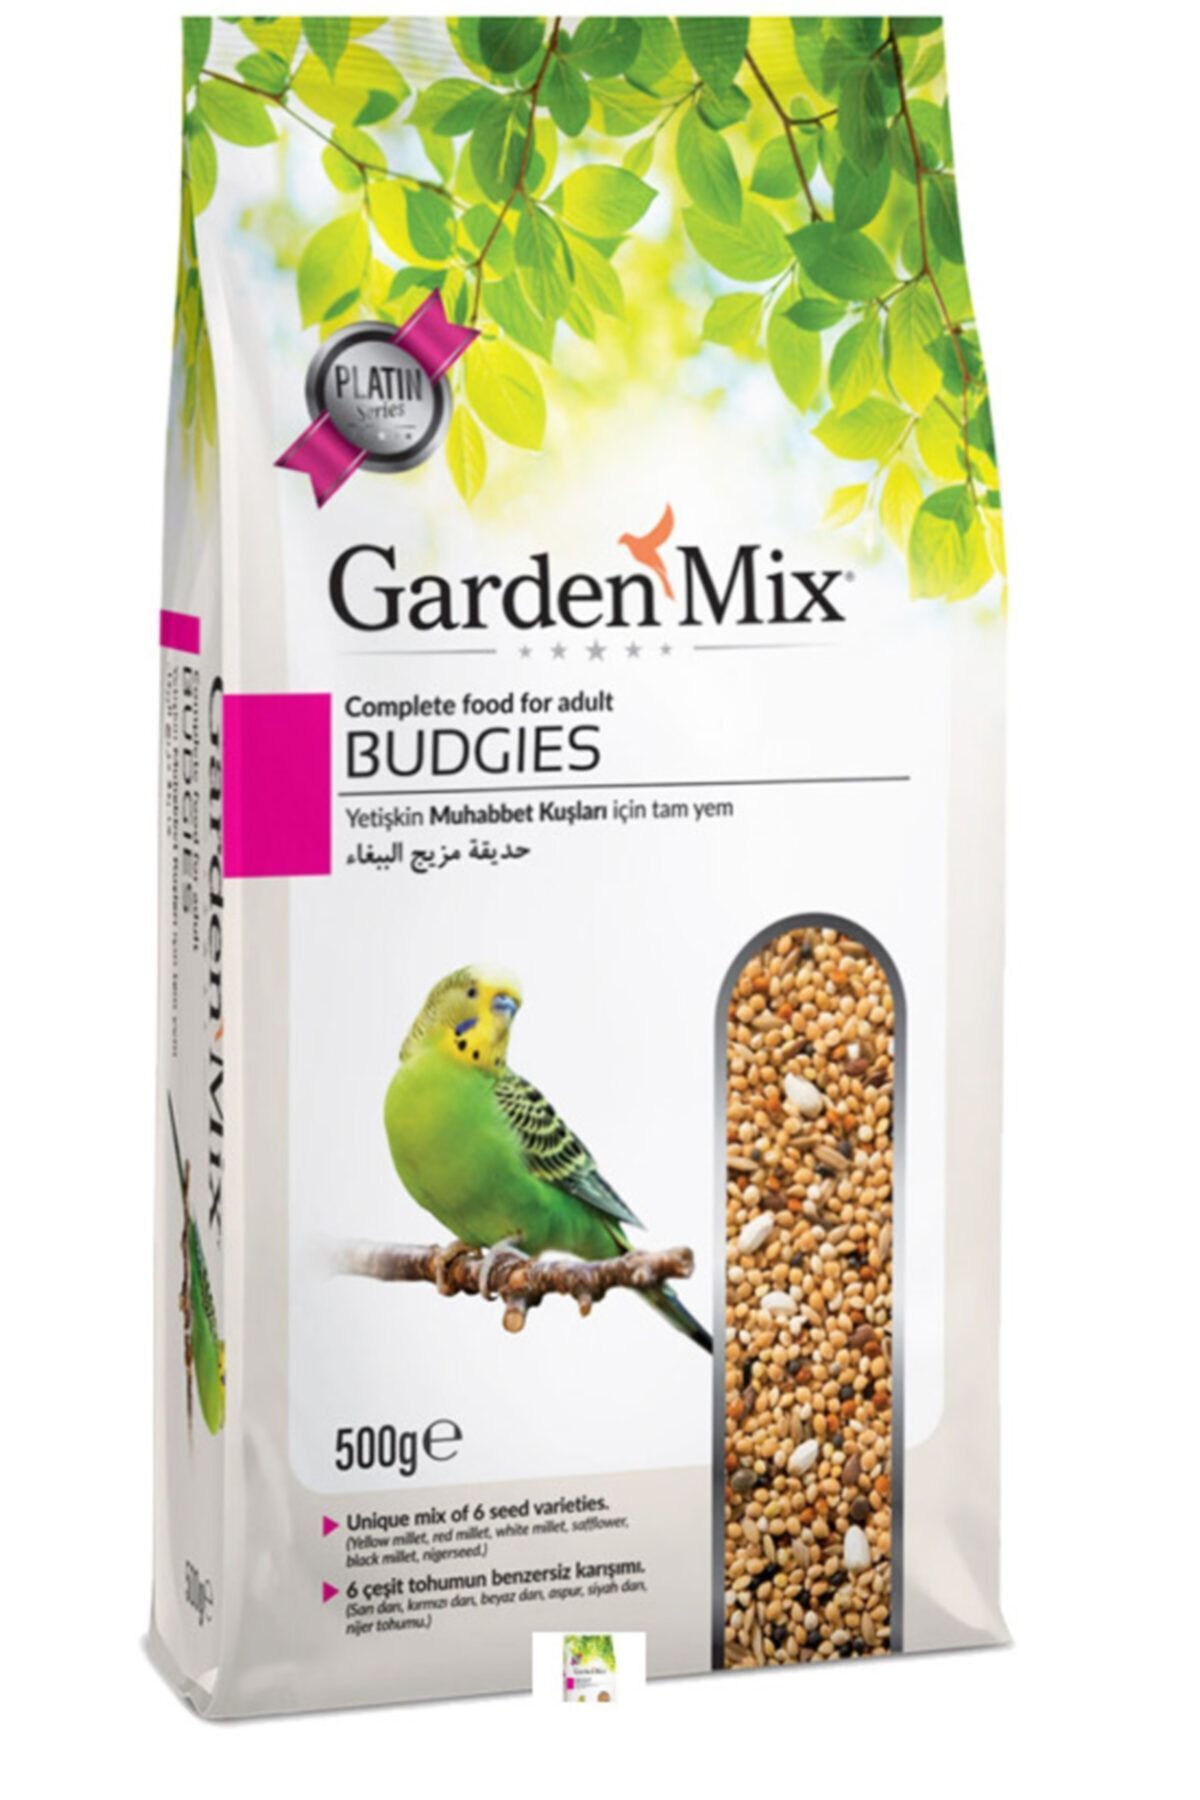 Gardenmix Garden Mix Yetişkin Muhabbet Kuşu